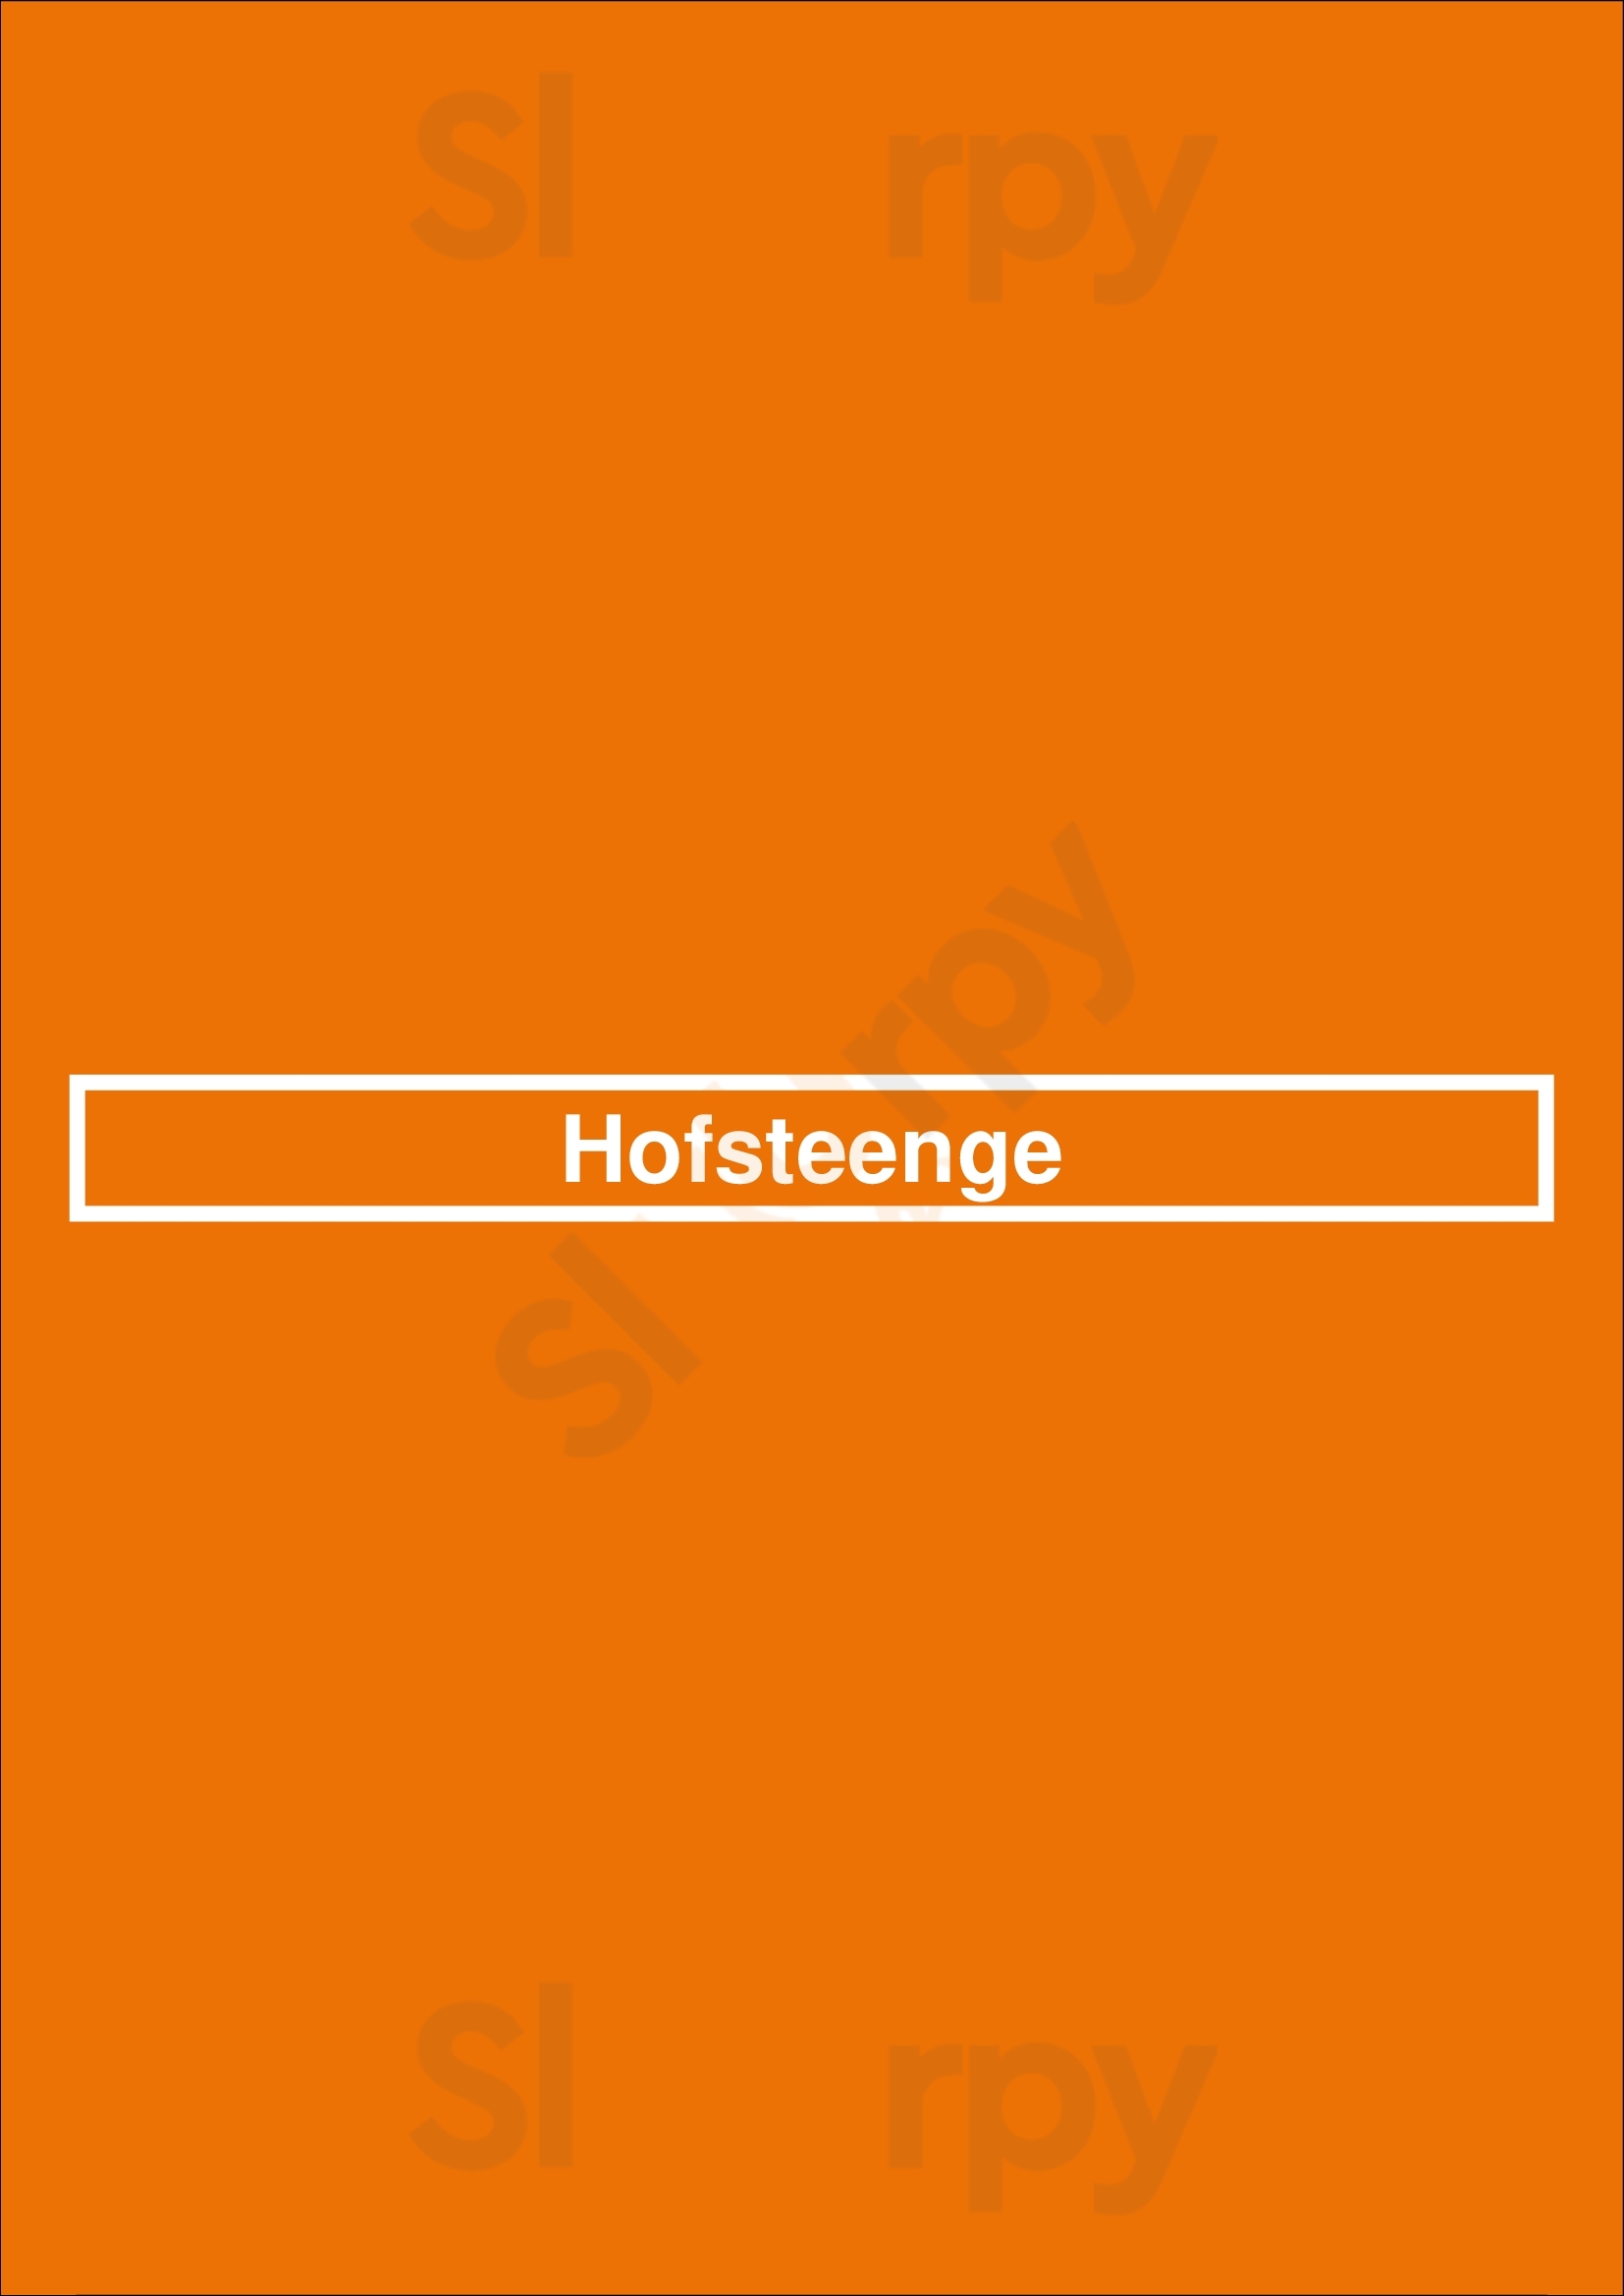 Hofsteenge Grolloo Menu - 1